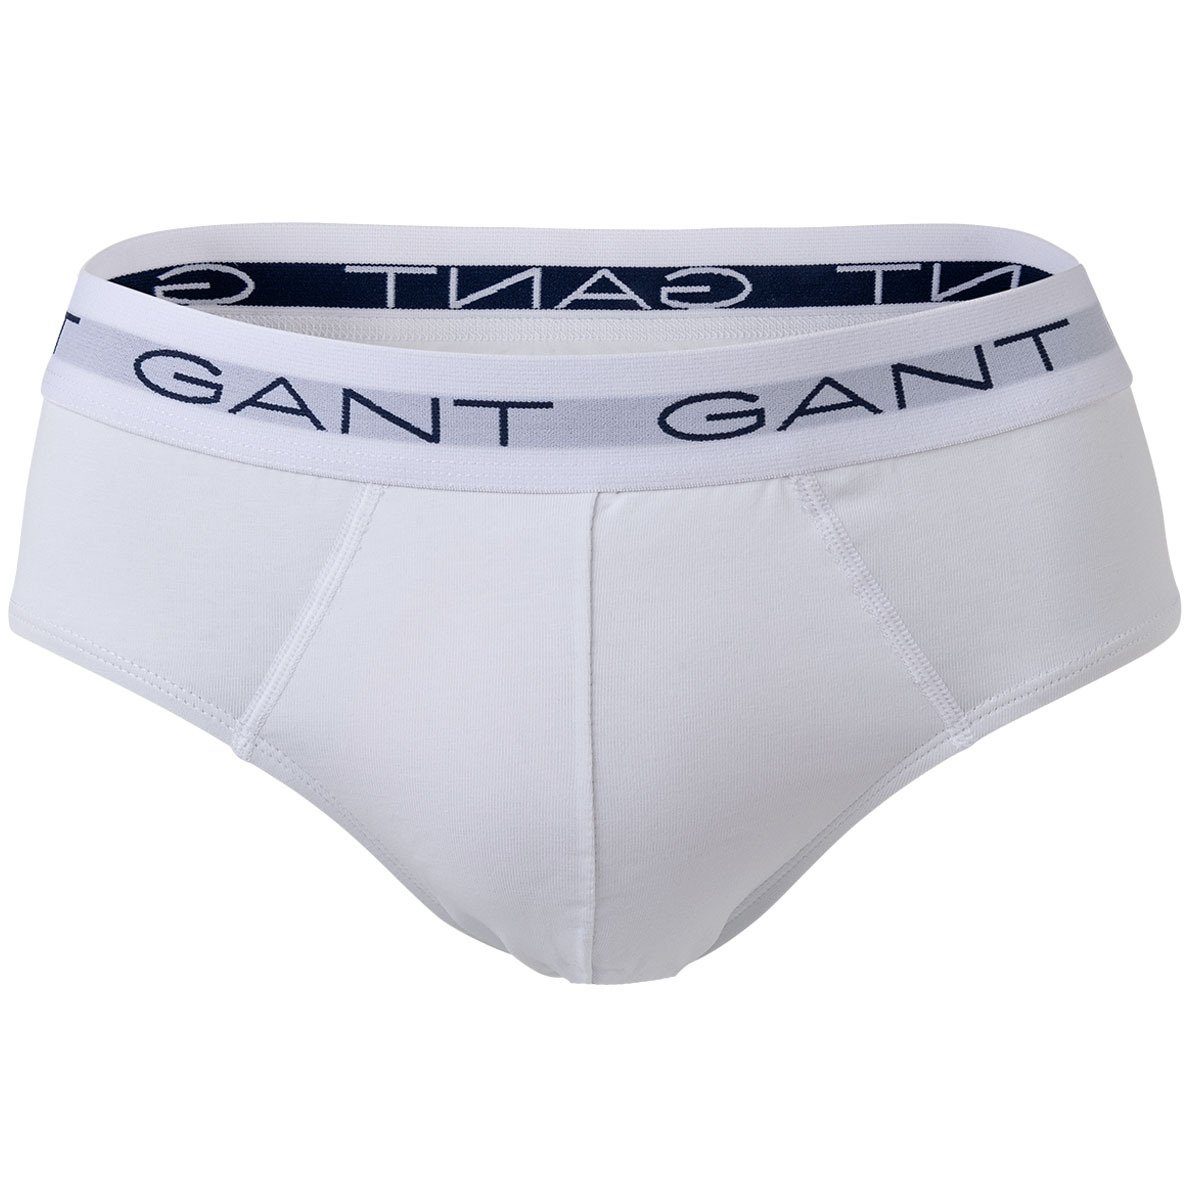 Grau Pack Slip Gant Cotton Briefs, 3er - Slips, Herren Stretch